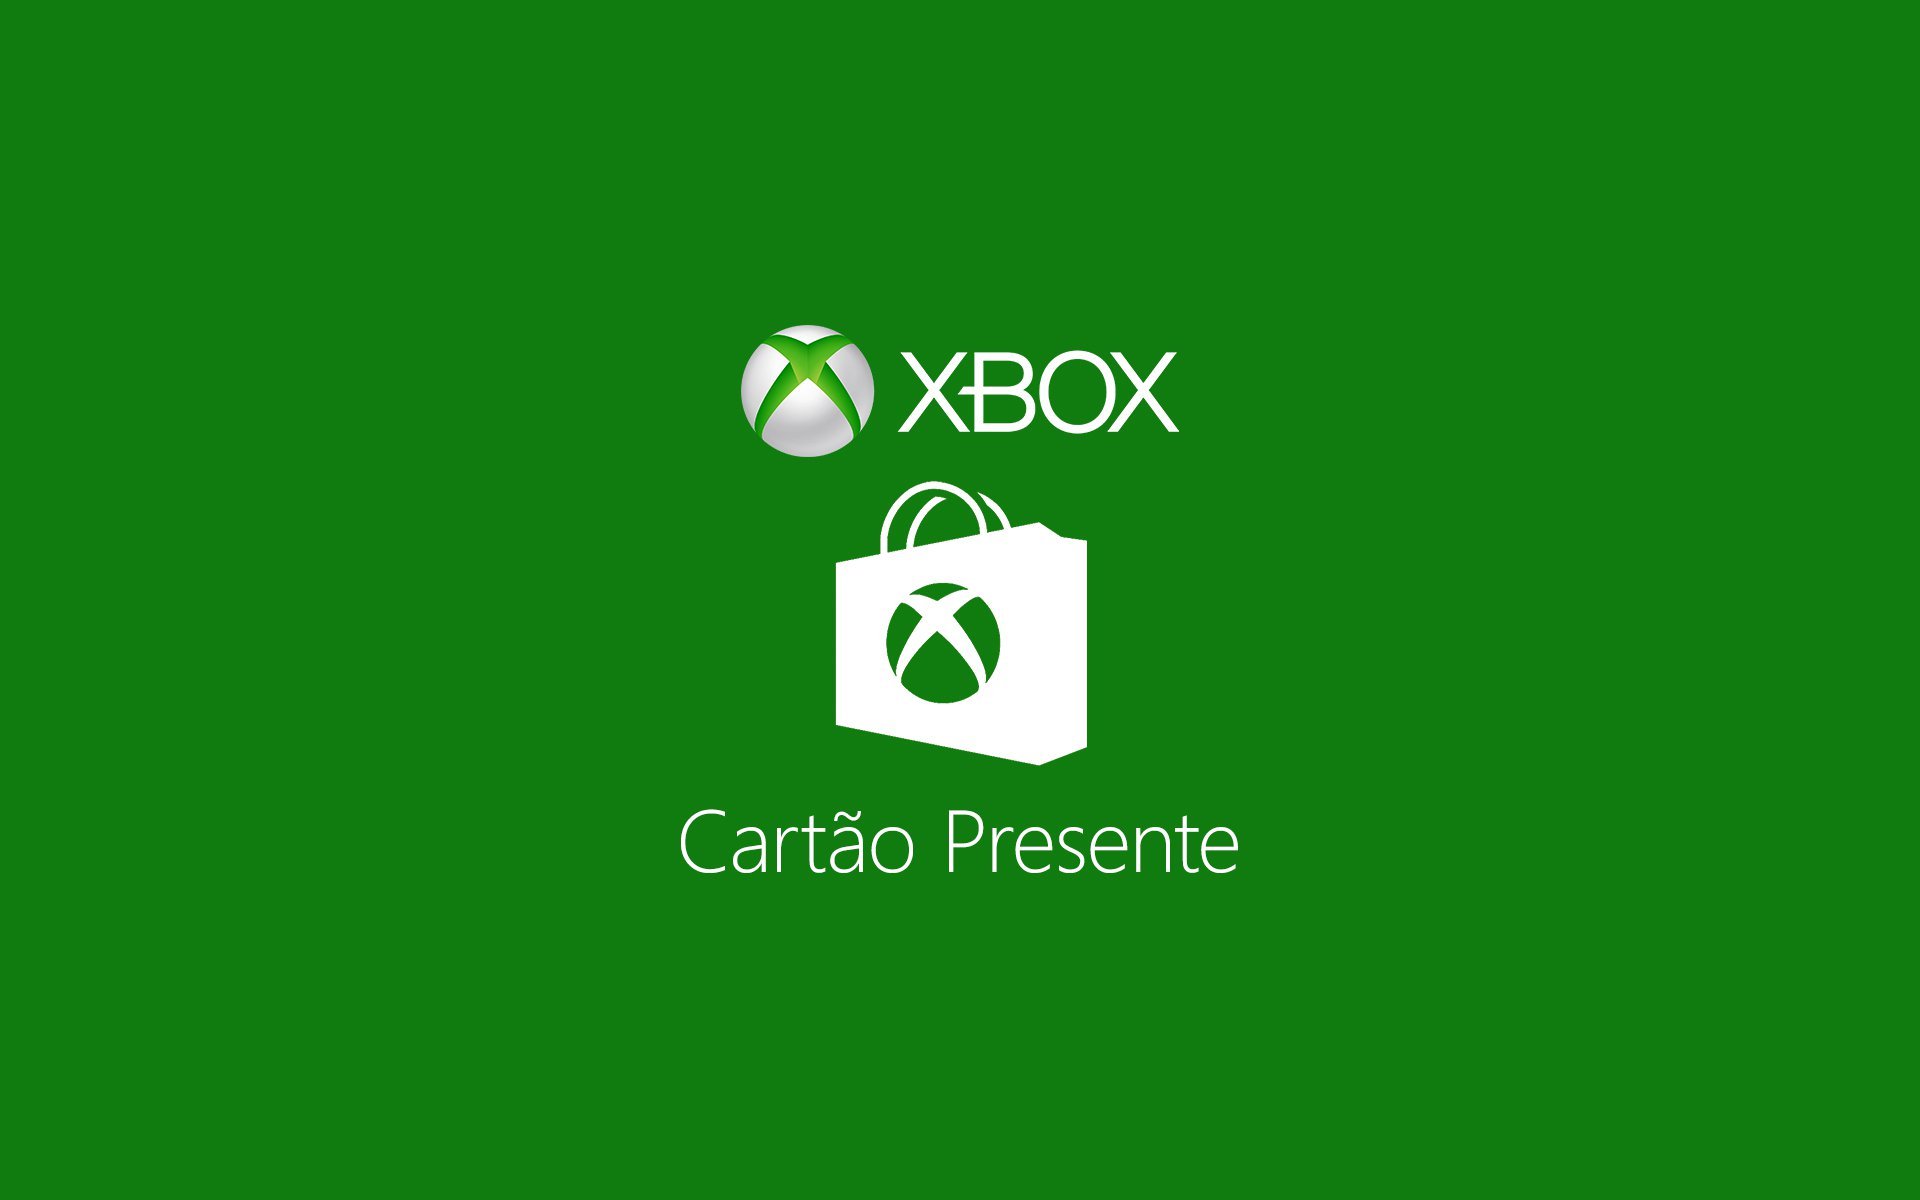 Cartão-Presente Xbox - Promocional